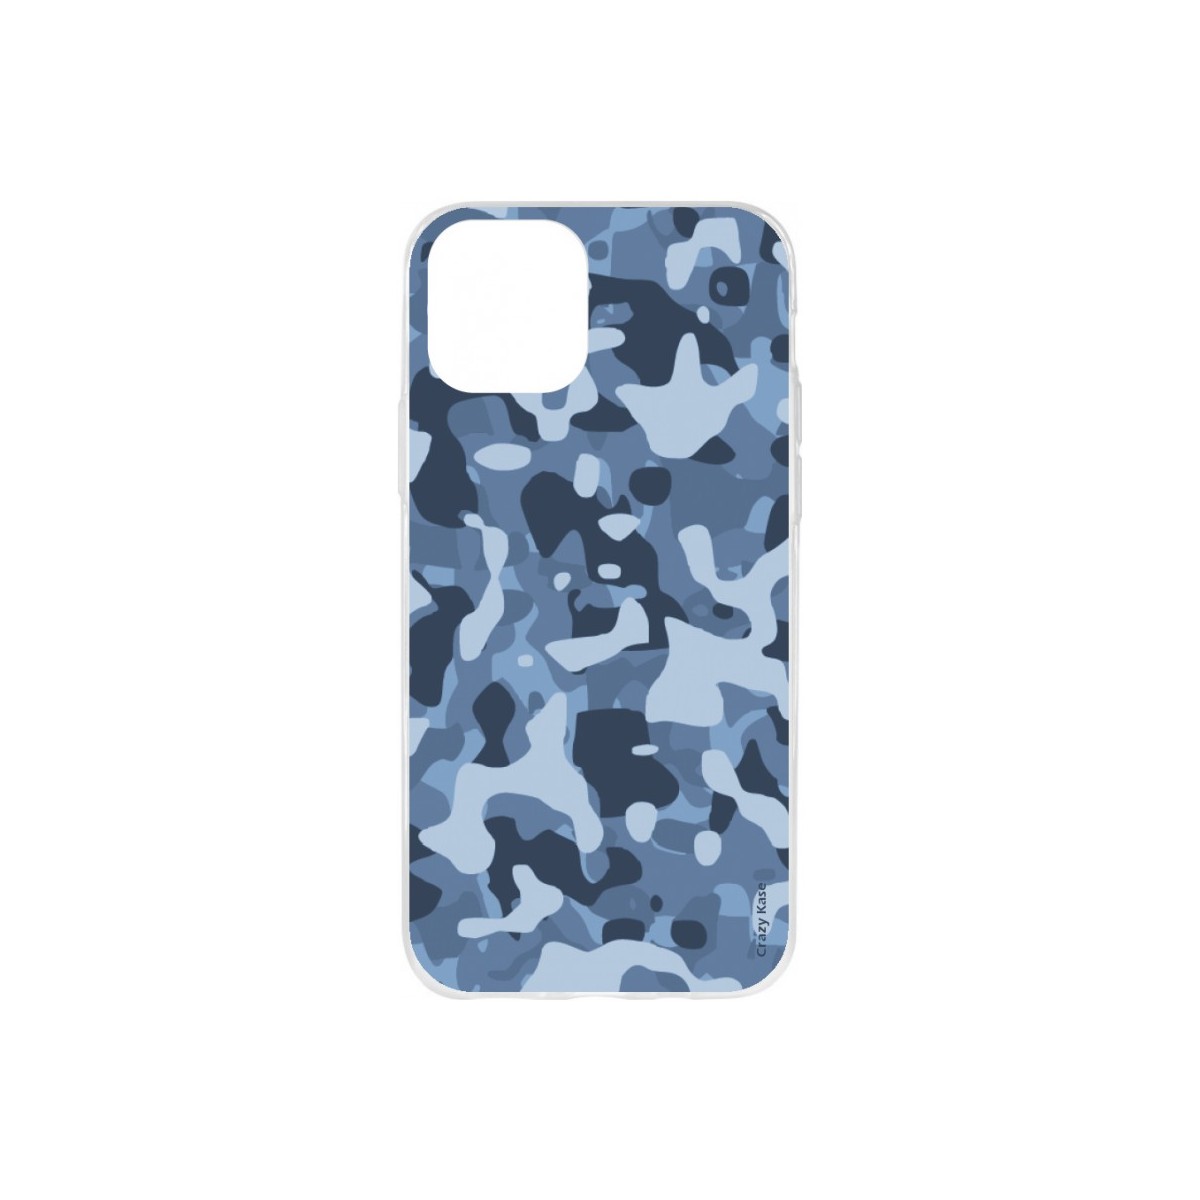 Coque iPhone 11 Pro Max souple Camouflage militaire bleu Crazy Kase